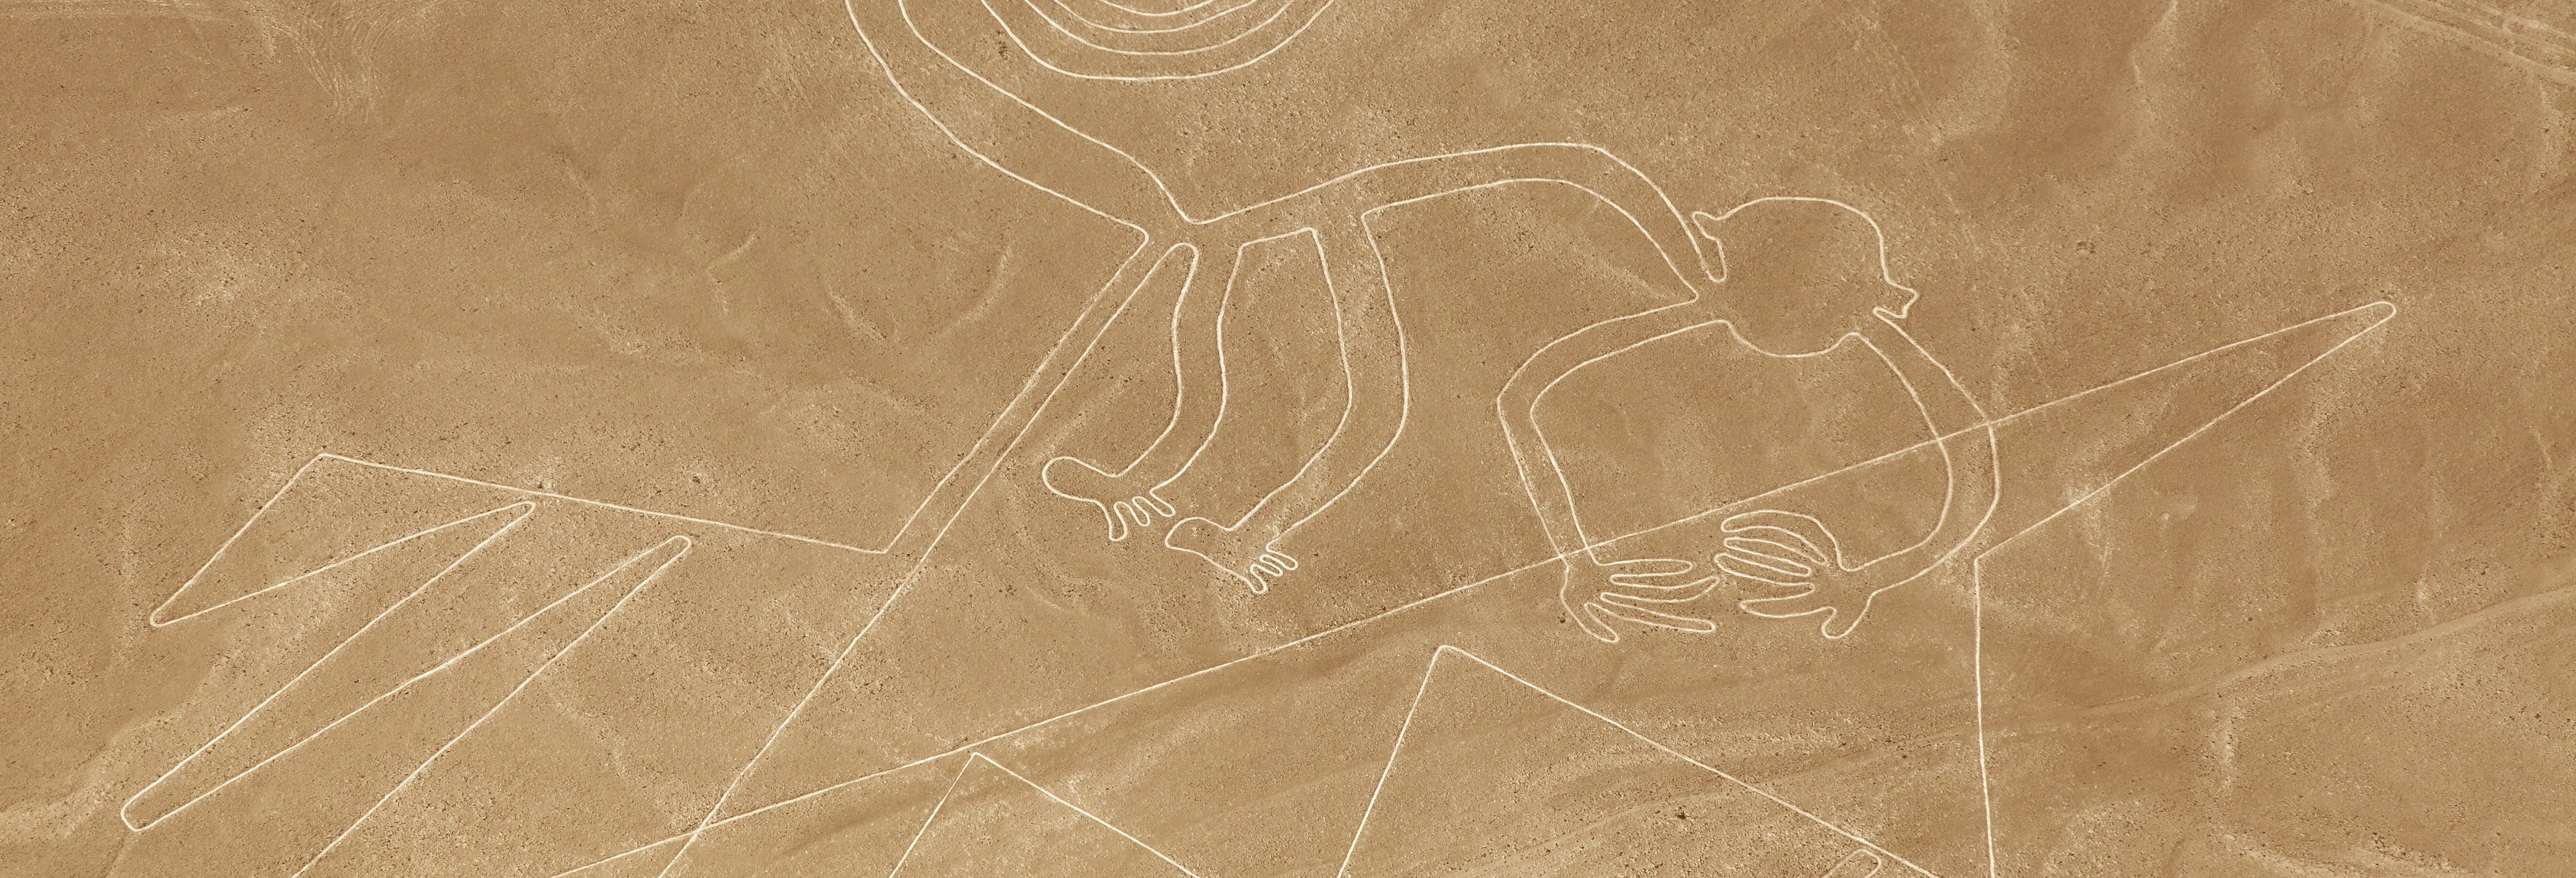 Excursão a Ica e voo sobre as Linhas de Nazca